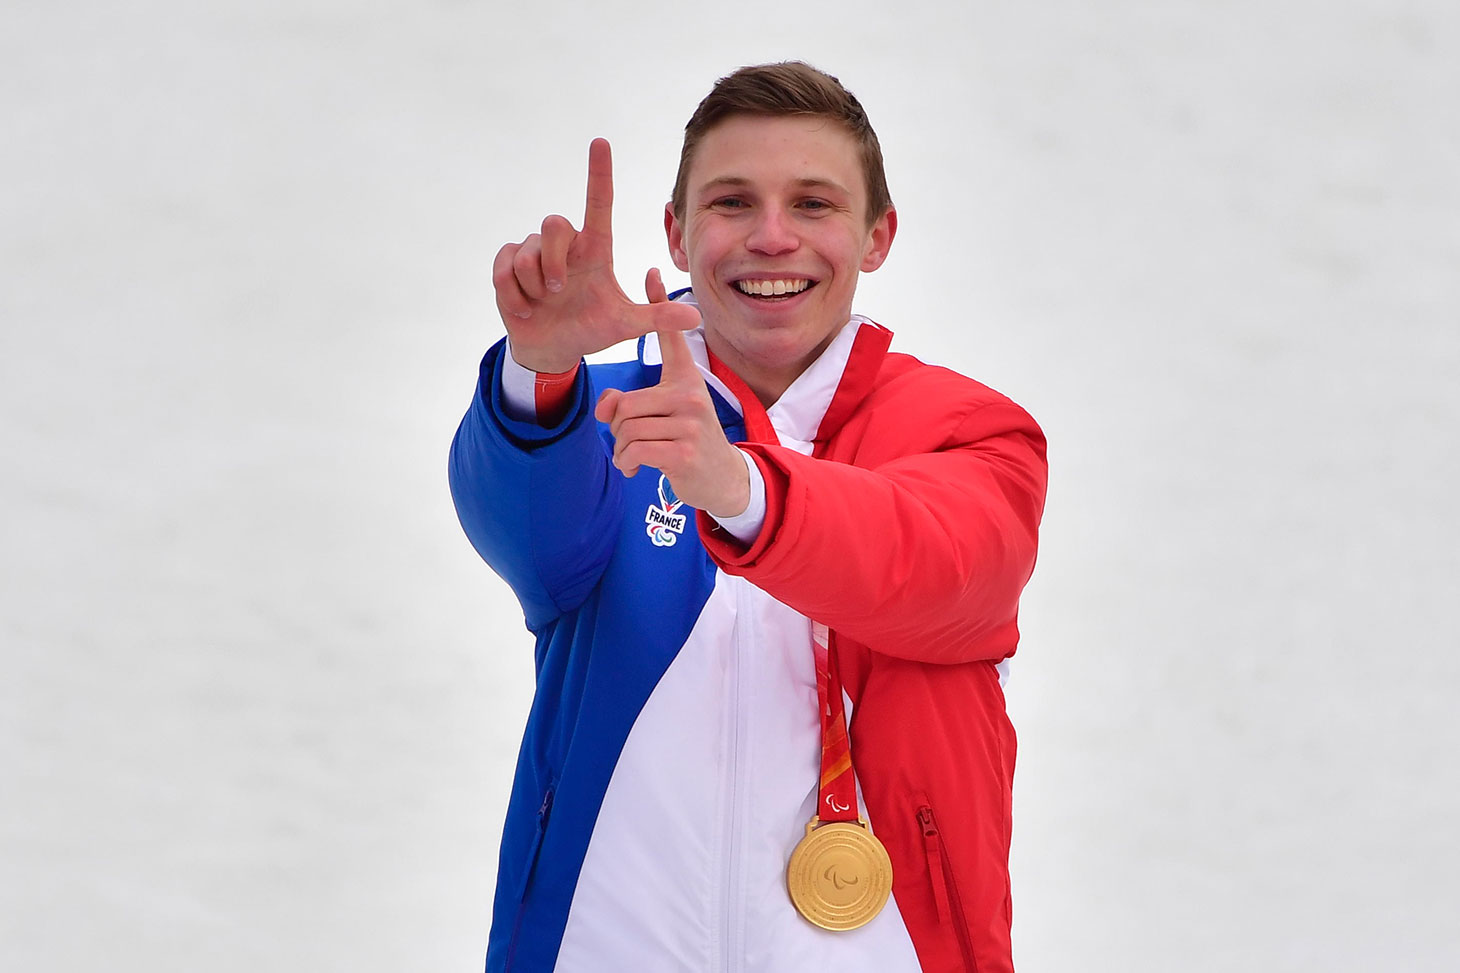 Le dernier jour des Jeux paralympiques, Arthur Bauchet décroche l’or du slalom et sa 4e médaille © L. Percival - CPSF